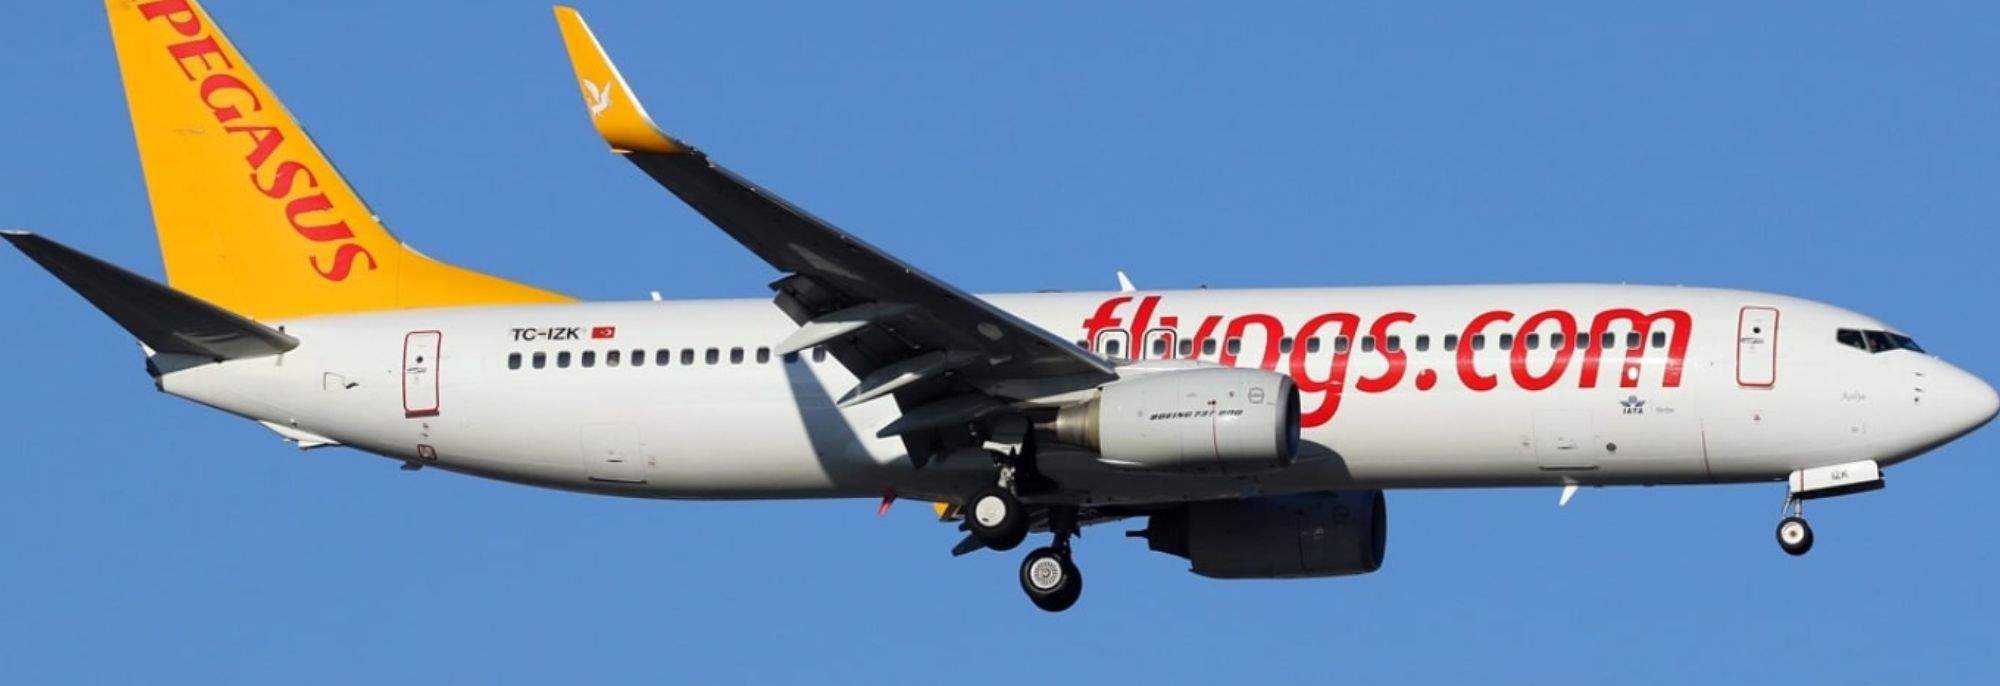 Połączenie Turcja-Polska: Pegasus Airlines ląduje na krakowskim lotnisku